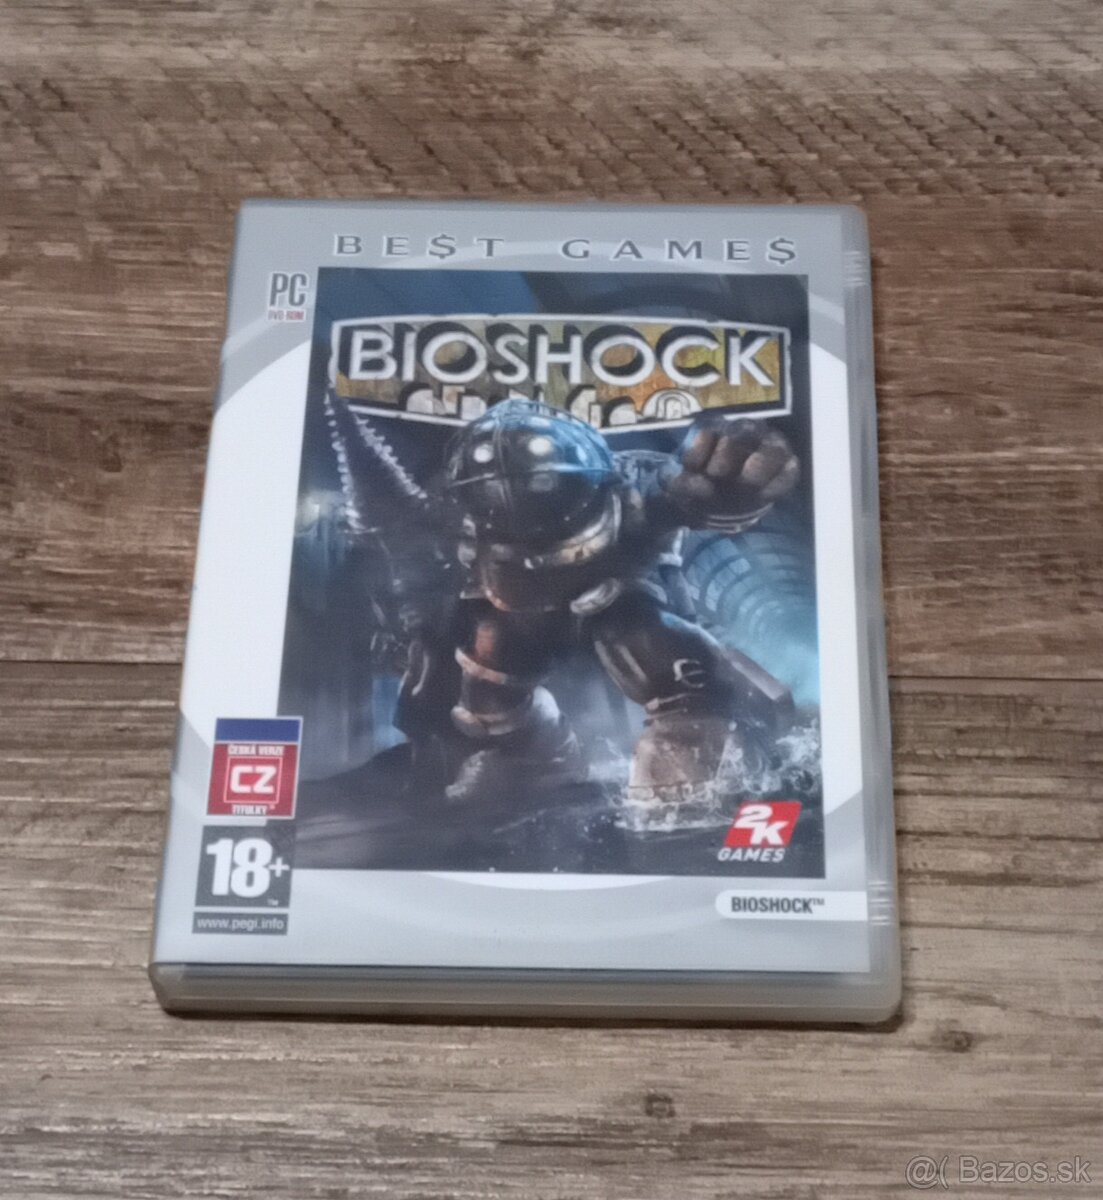 Predám hru Bioshock na pc